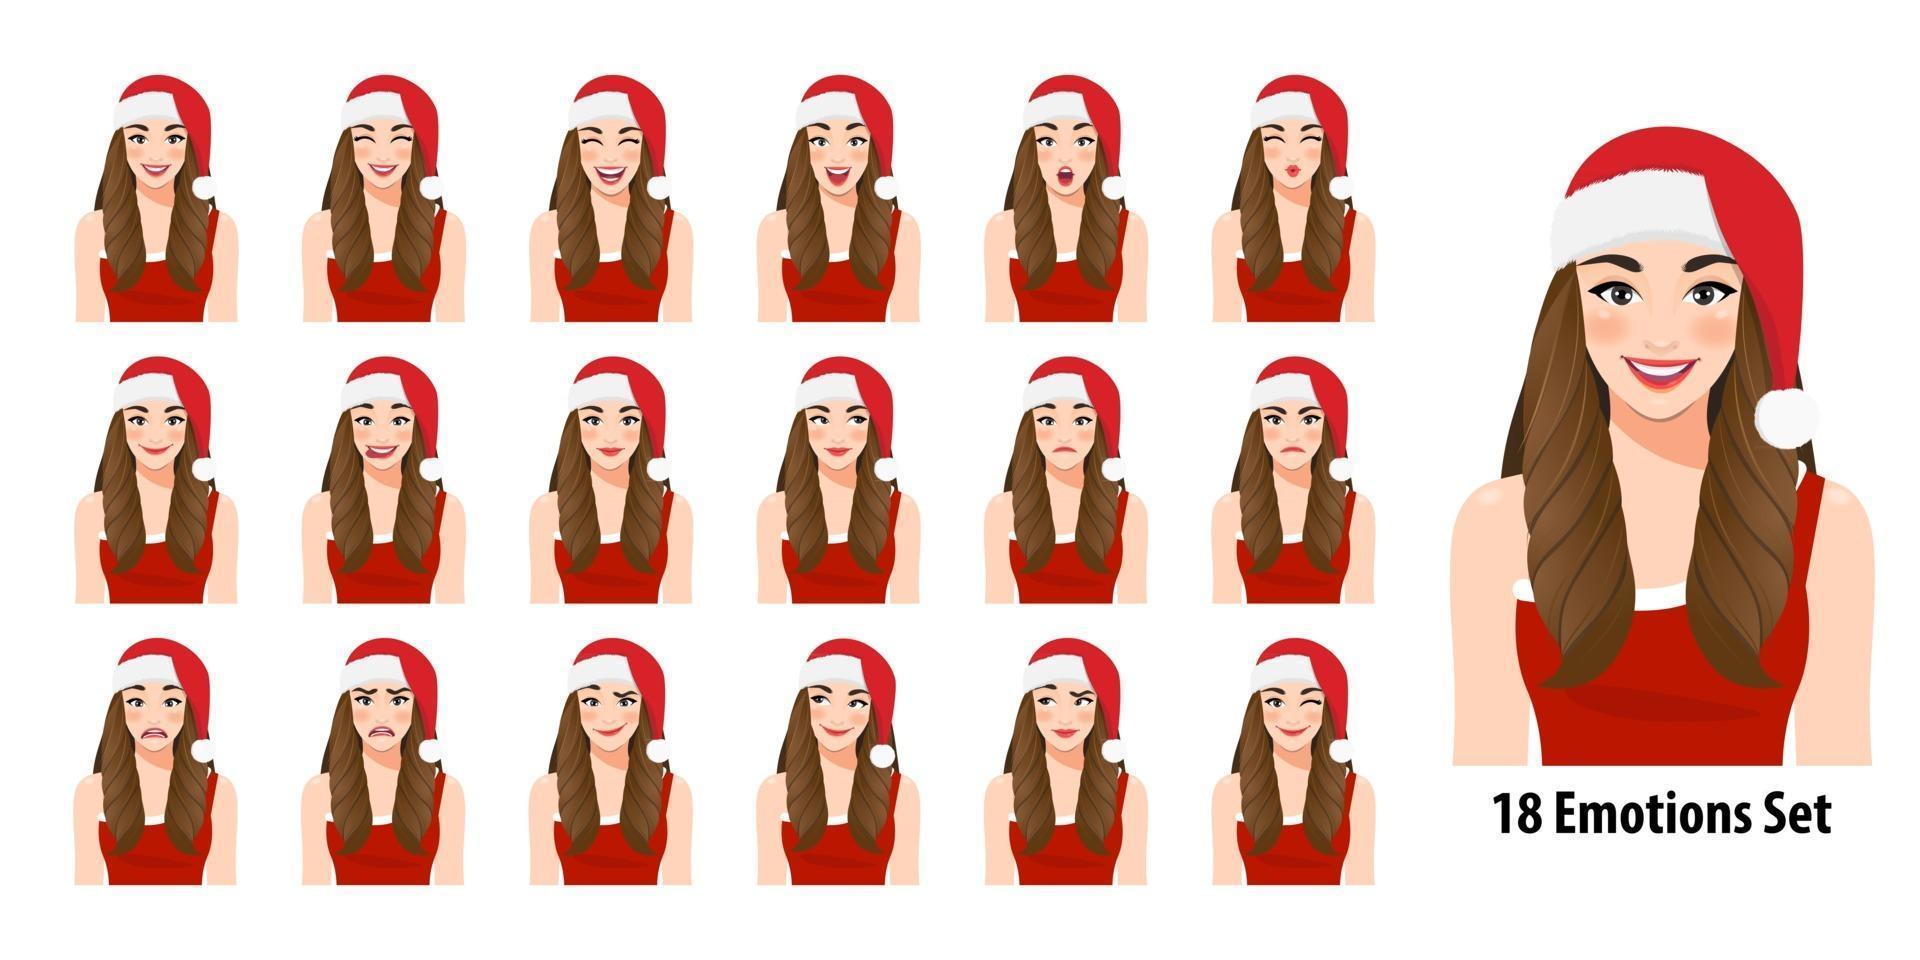 jul flicka i röd klänning och jul santa hatt med olika ansiktsuttryck set isolerade i tecknad karaktär stil vektorillustration vektor